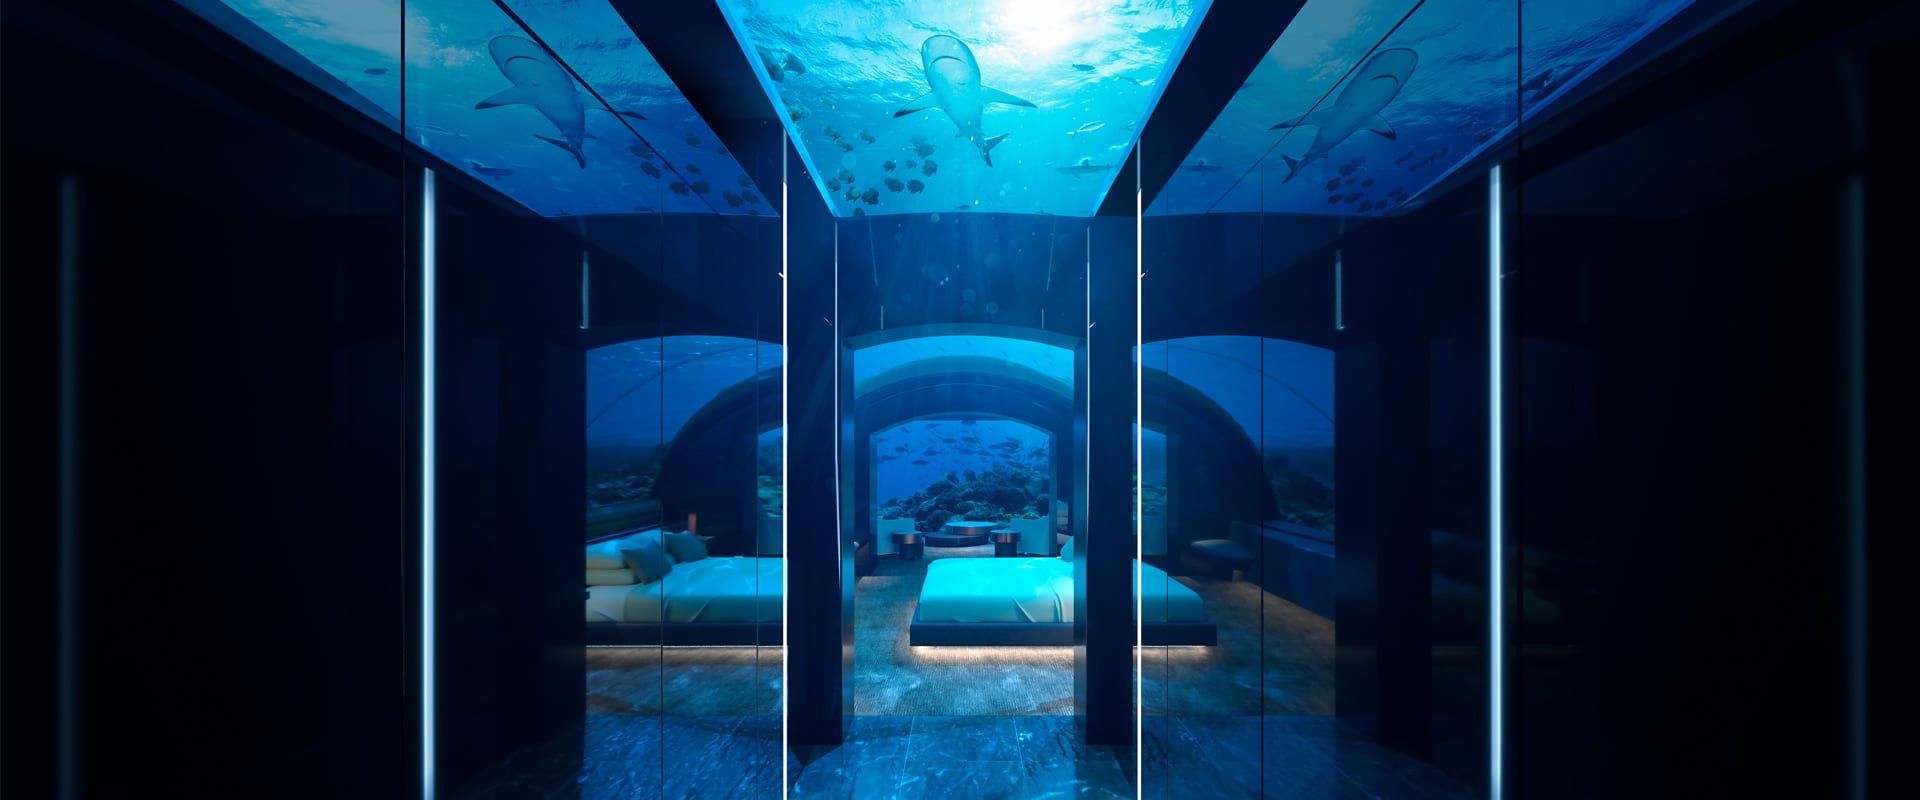 Conrad Maldives underwater hotel muraka